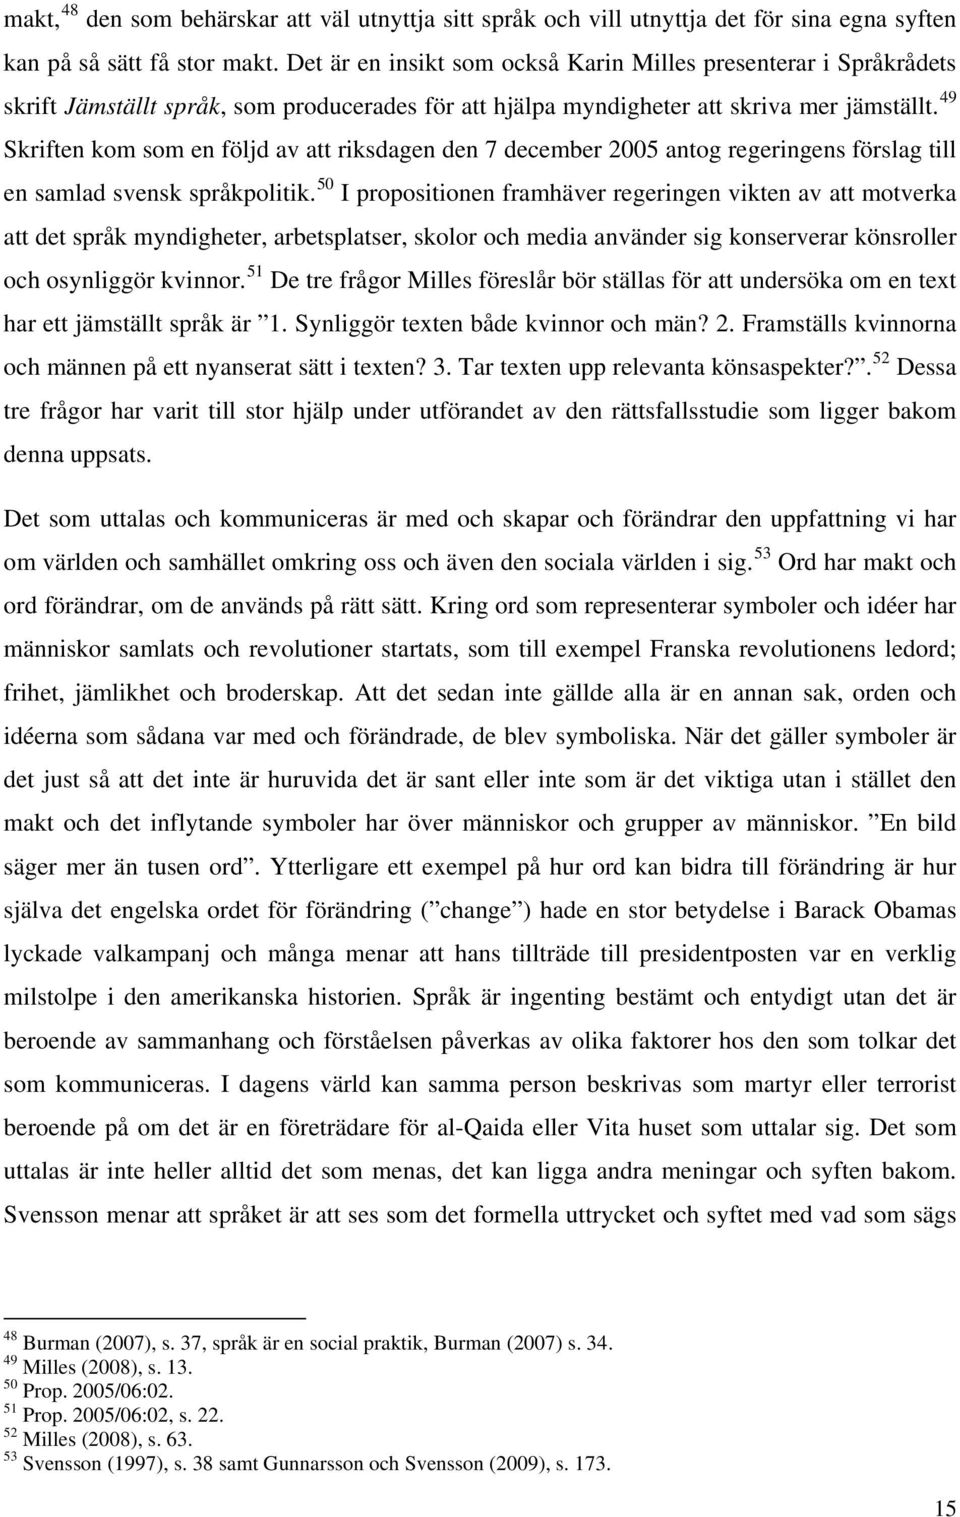 49 Skriften kom som en följd av att riksdagen den 7 december 2005 antog regeringens förslag till en samlad svensk språkpolitik.